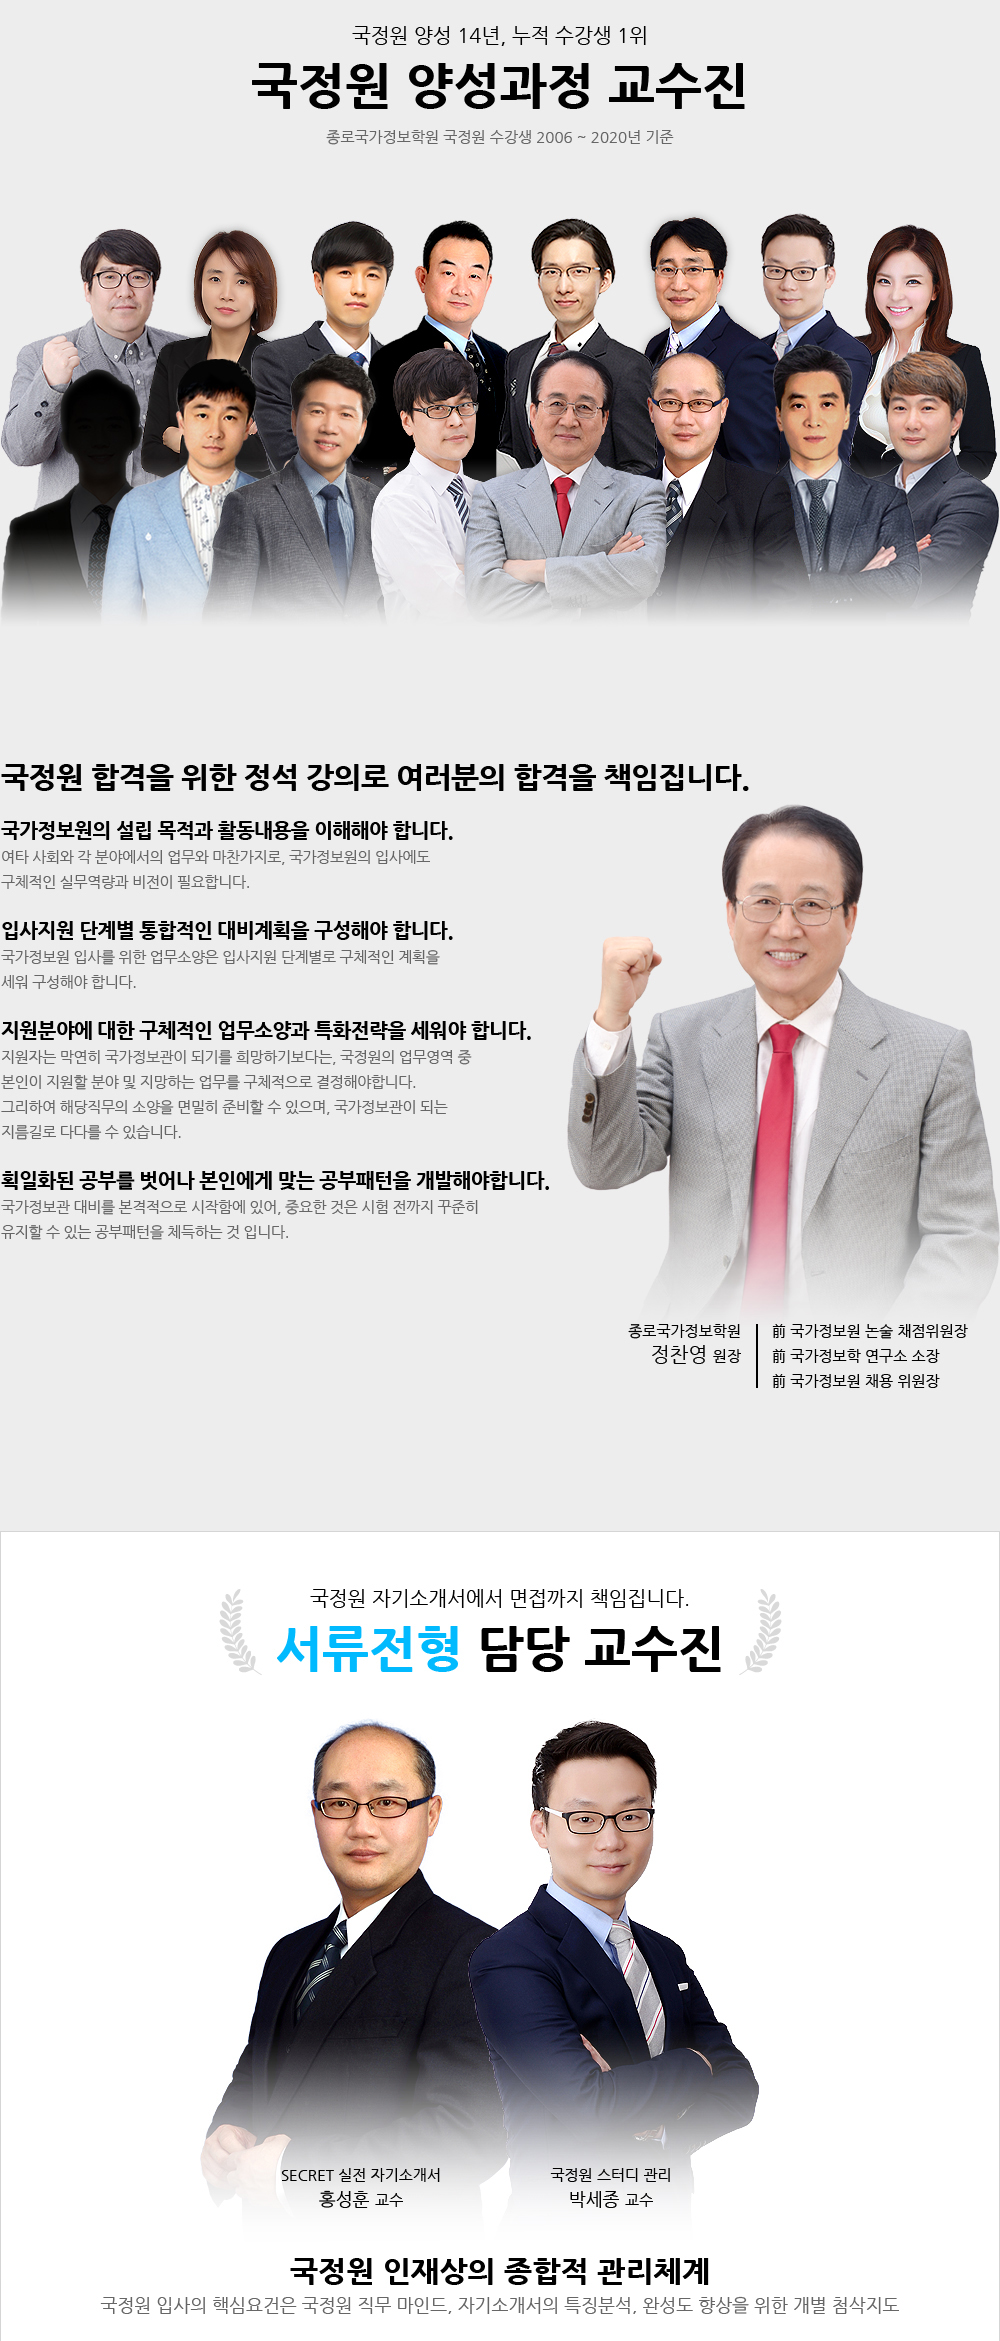 국정원 채용 대비 학원과정 (자소서, NIAT, 논술, 면접)